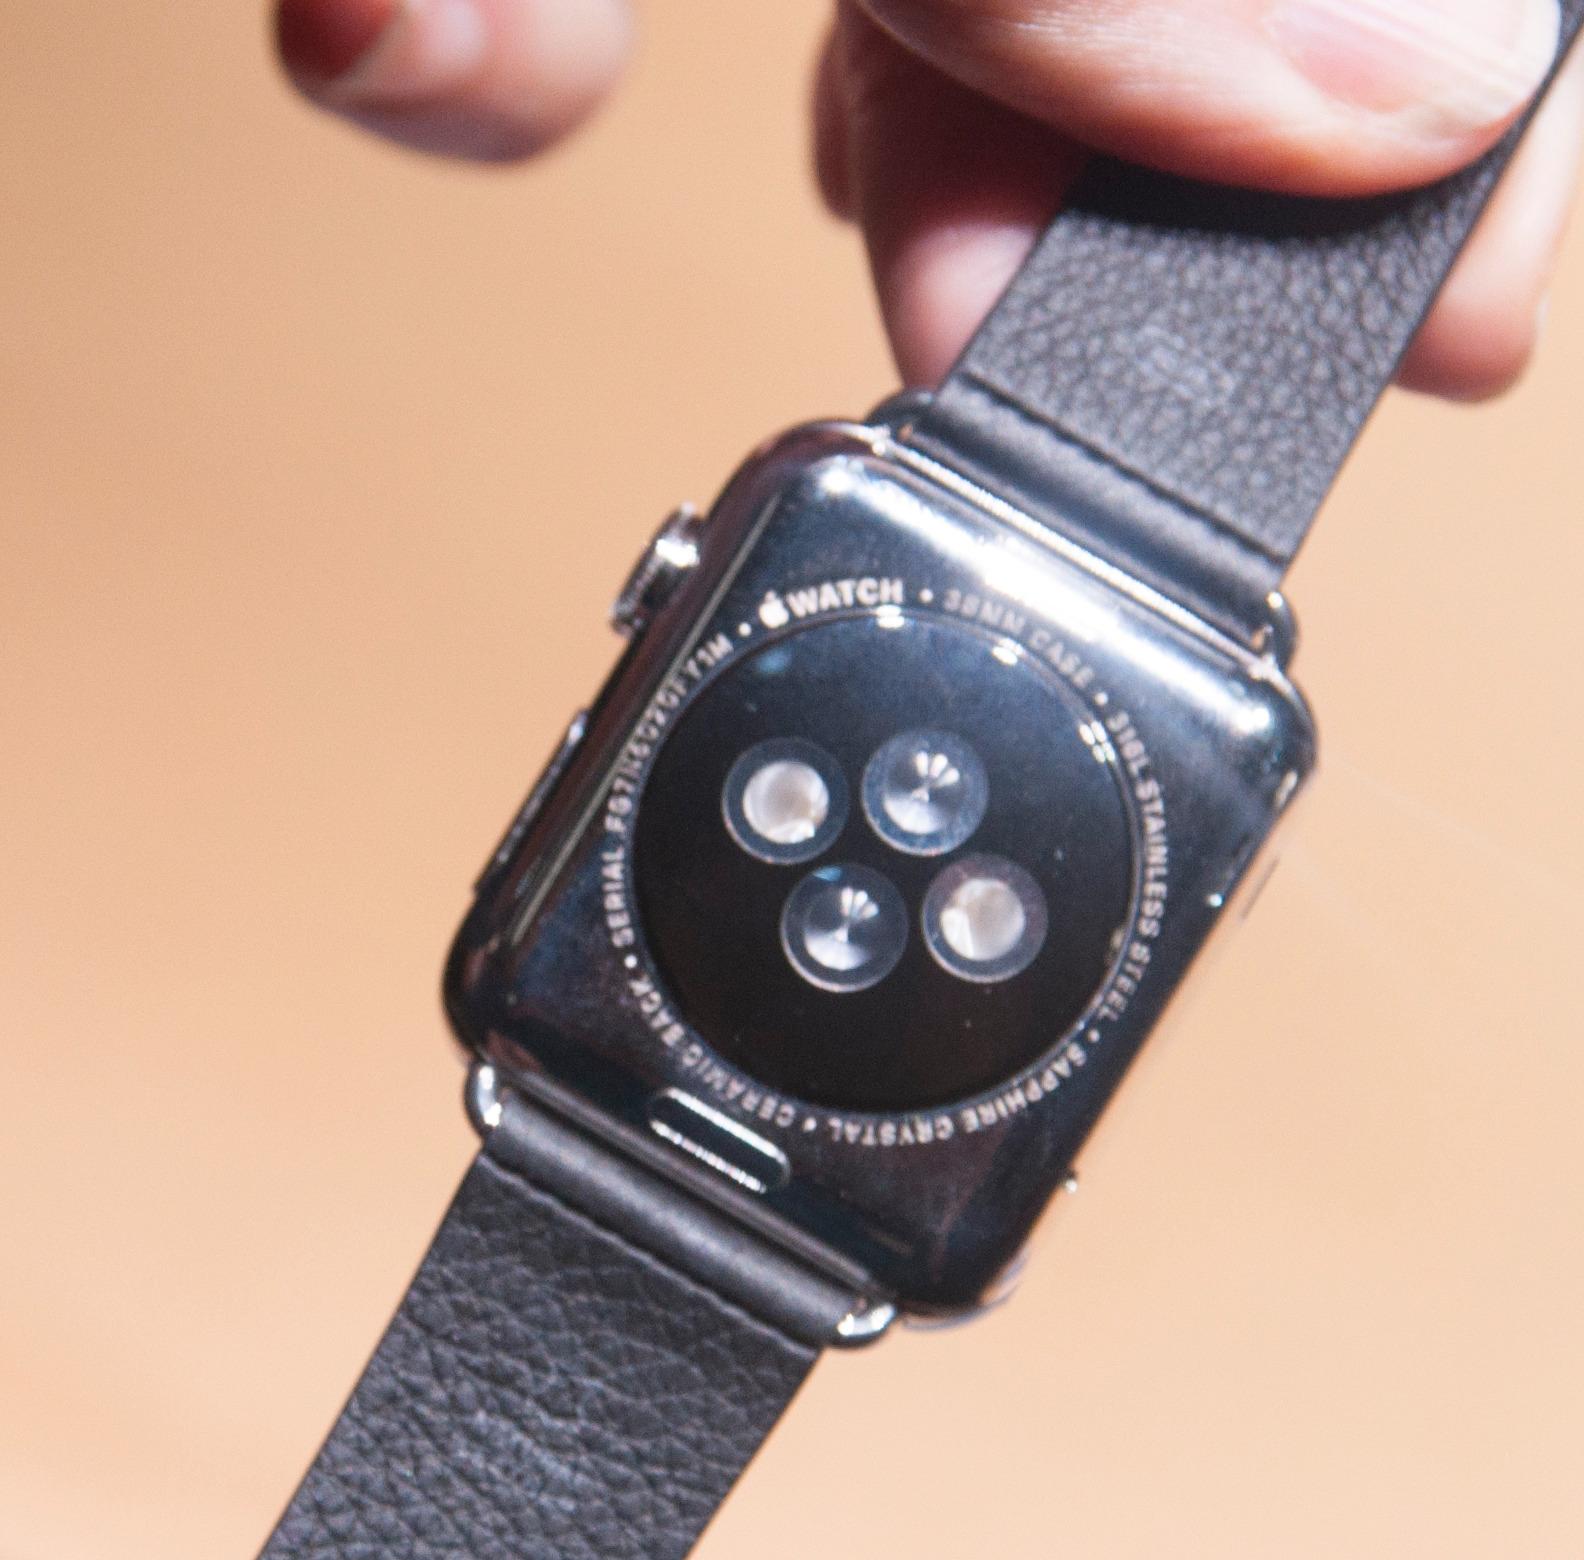 På undersiden har klokken pulssensor som brukes i kombinasjon med treningsappen Apple har laget. Den kan også fôre tredjeparts treningsapper.Foto: Finn Jarle Kvalheim, Amobil.no